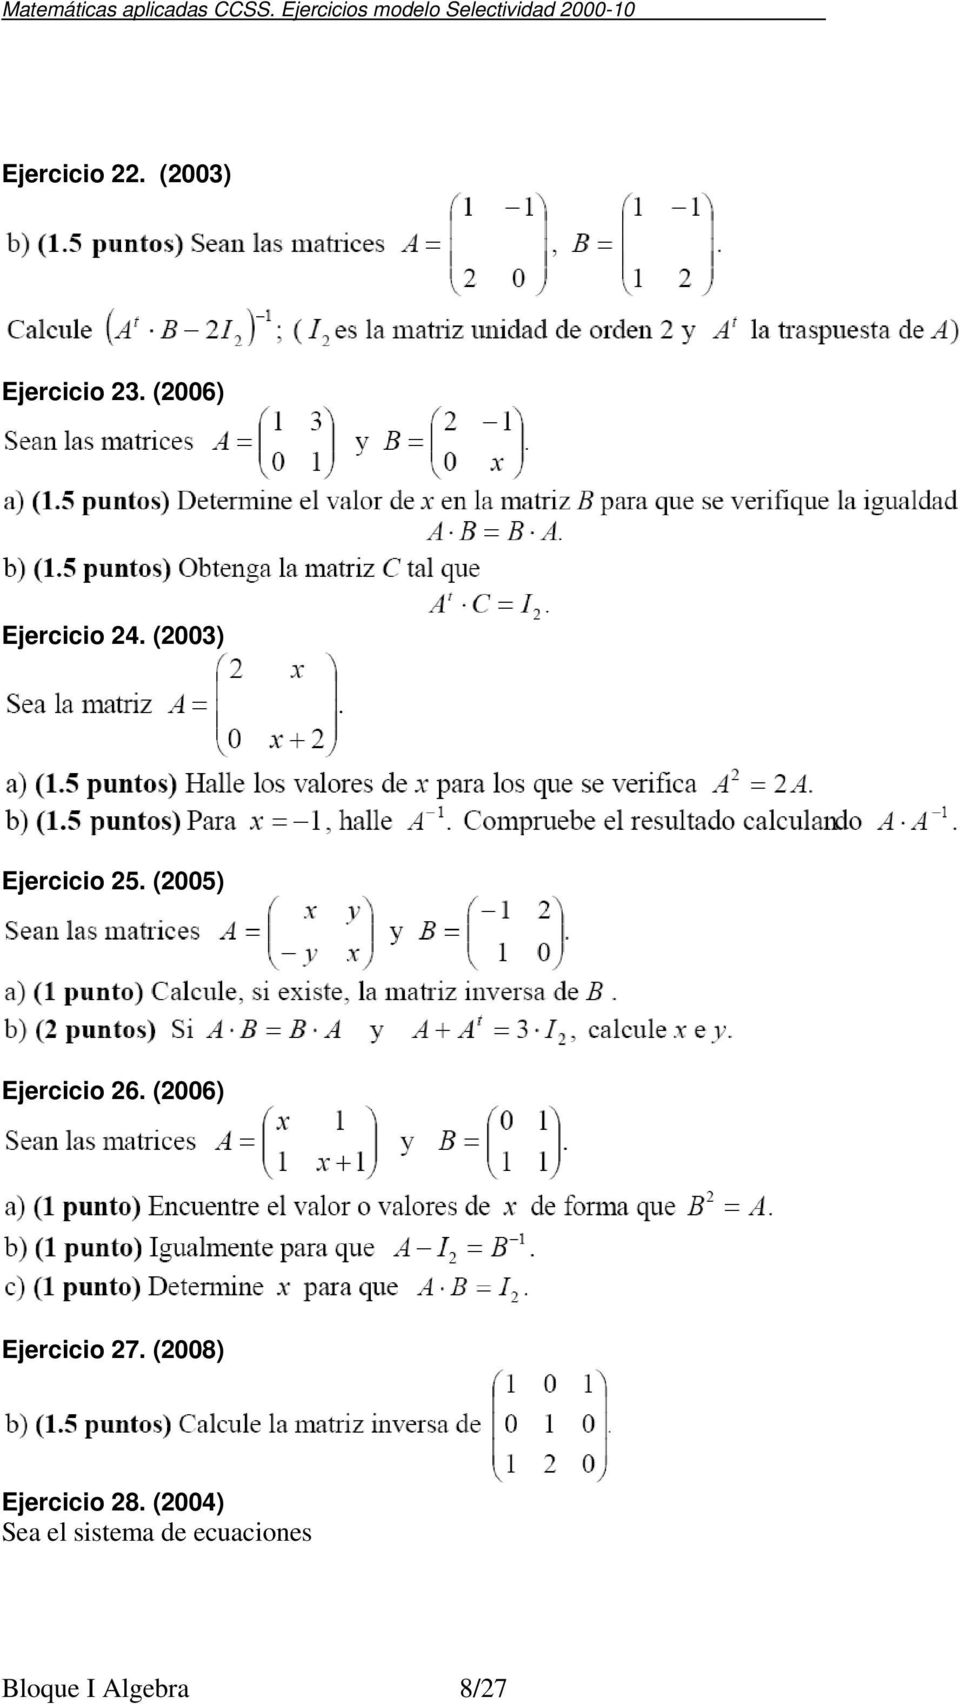 (3) Ejercicio 3. (6) Ejercicio 4. (3) Ejercicio 5.